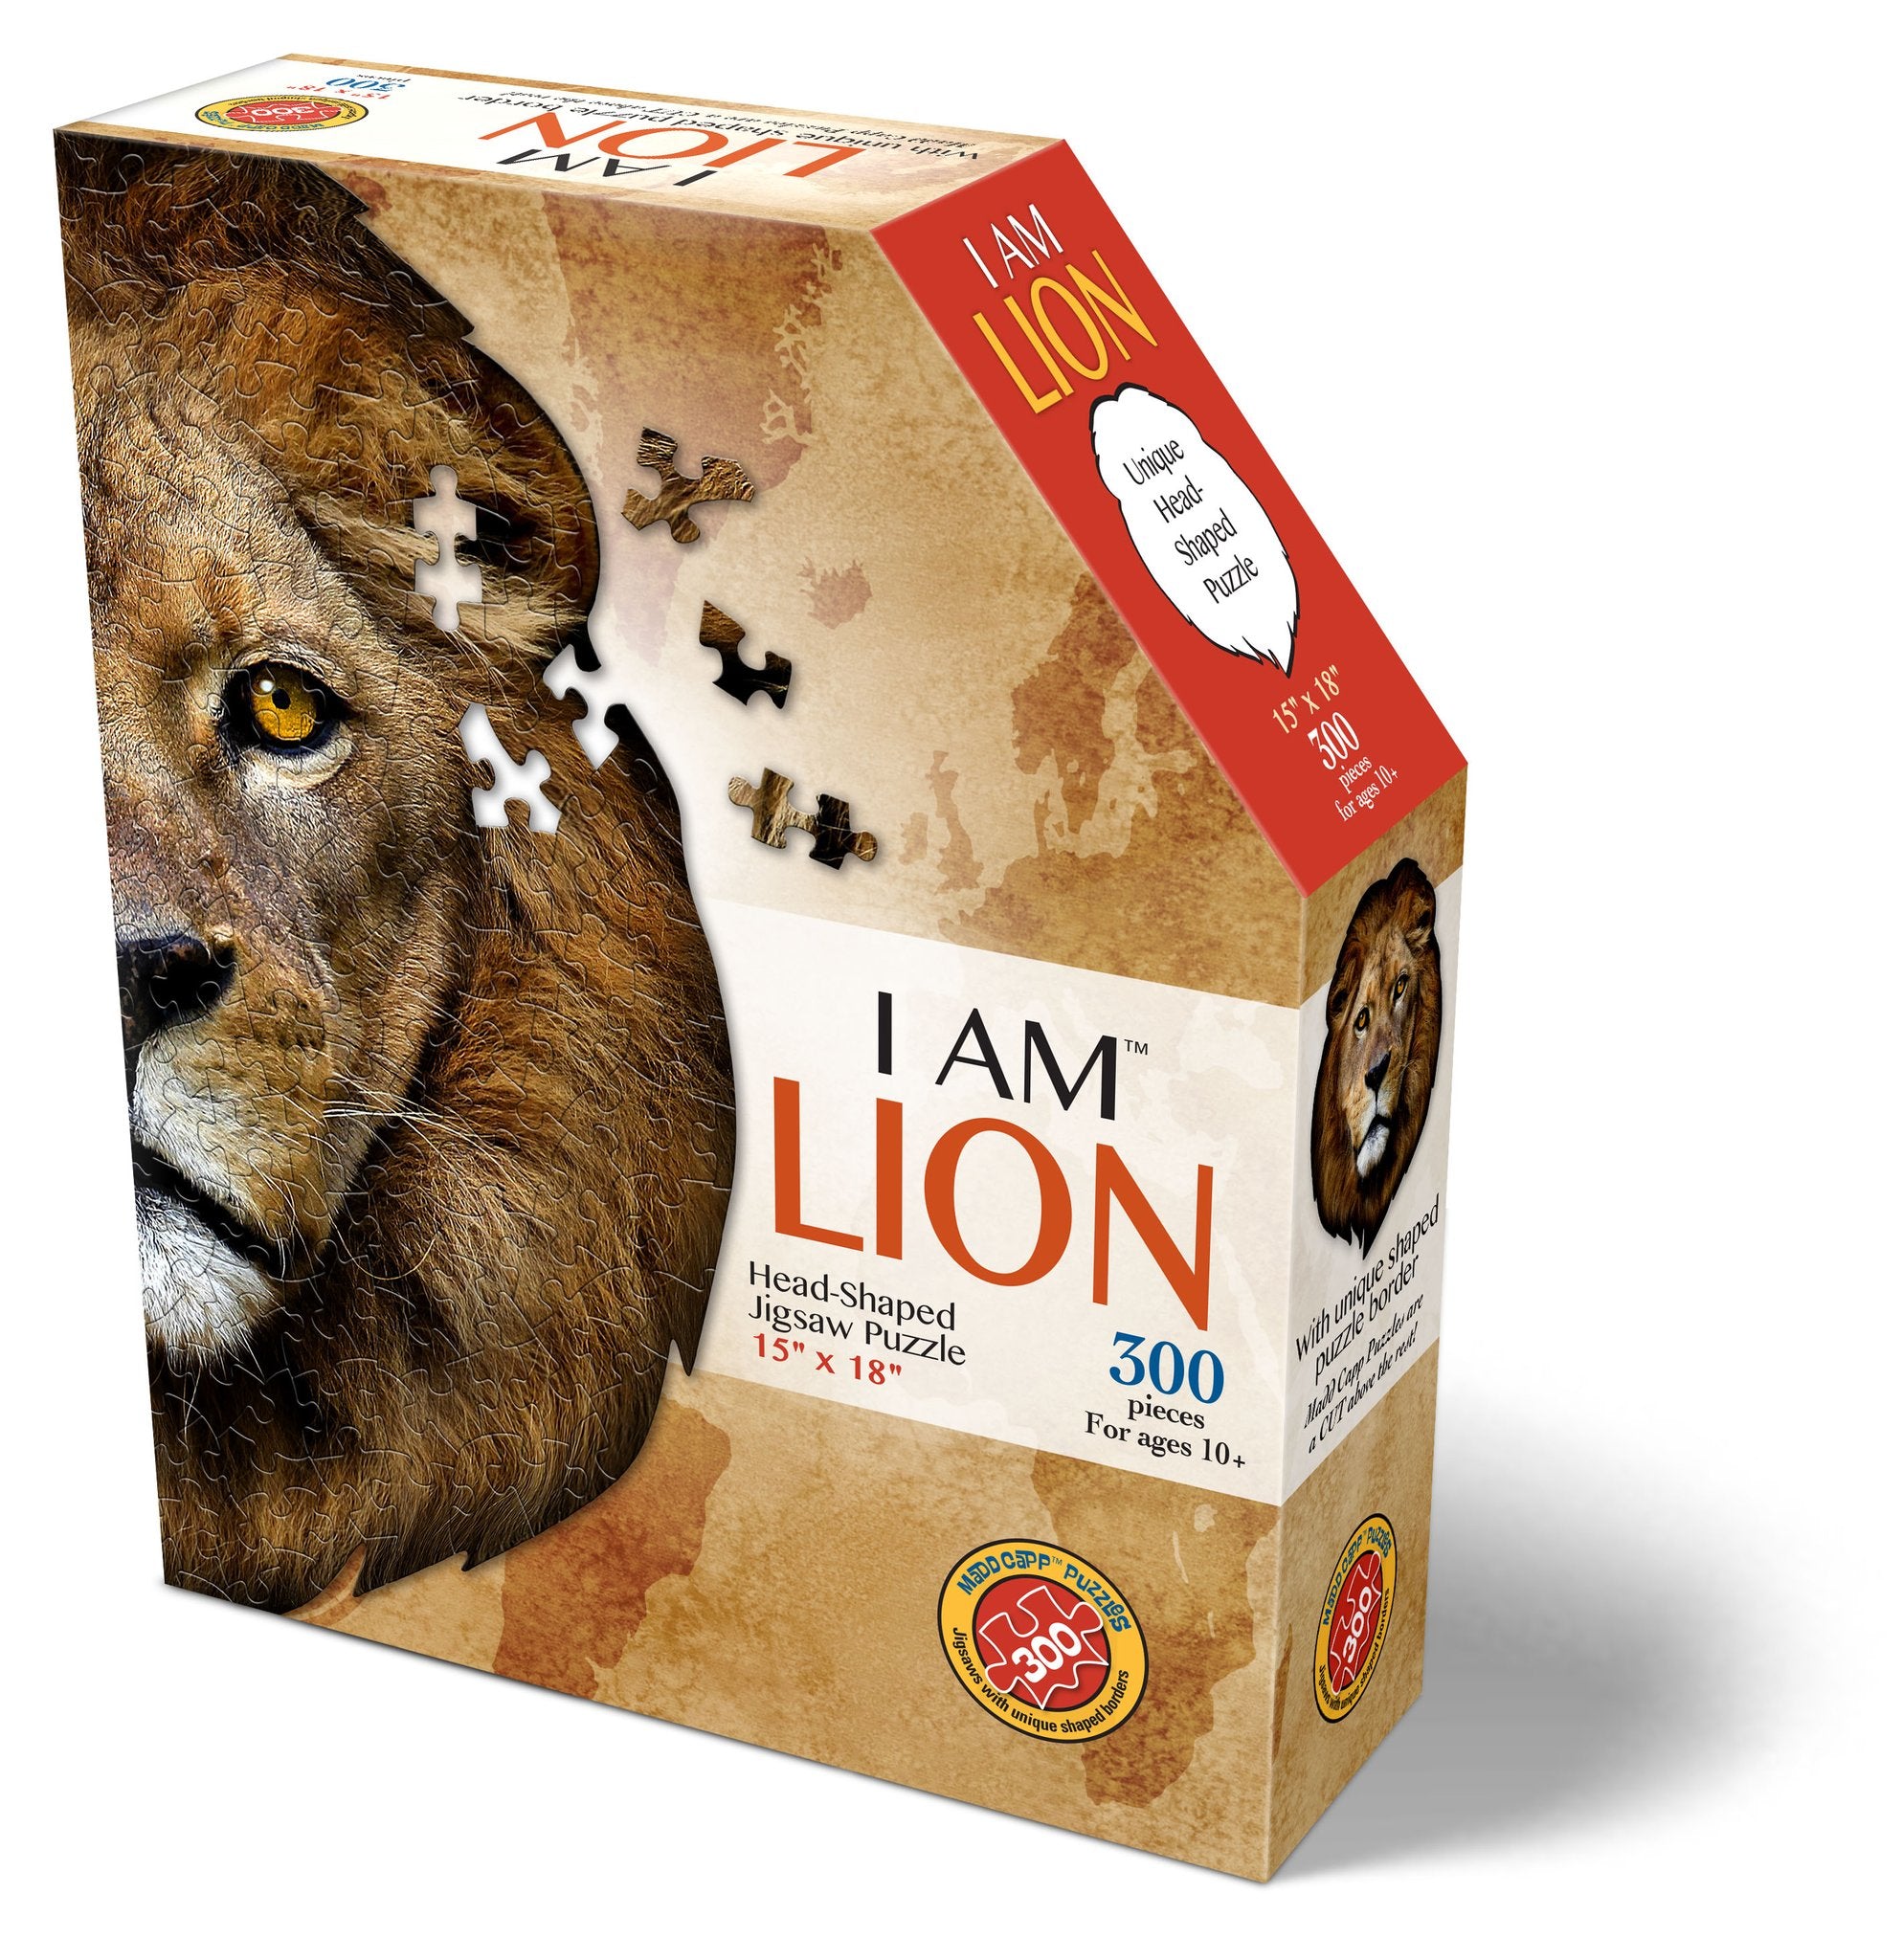 I Am Lion (300 piece shaped puzzle)